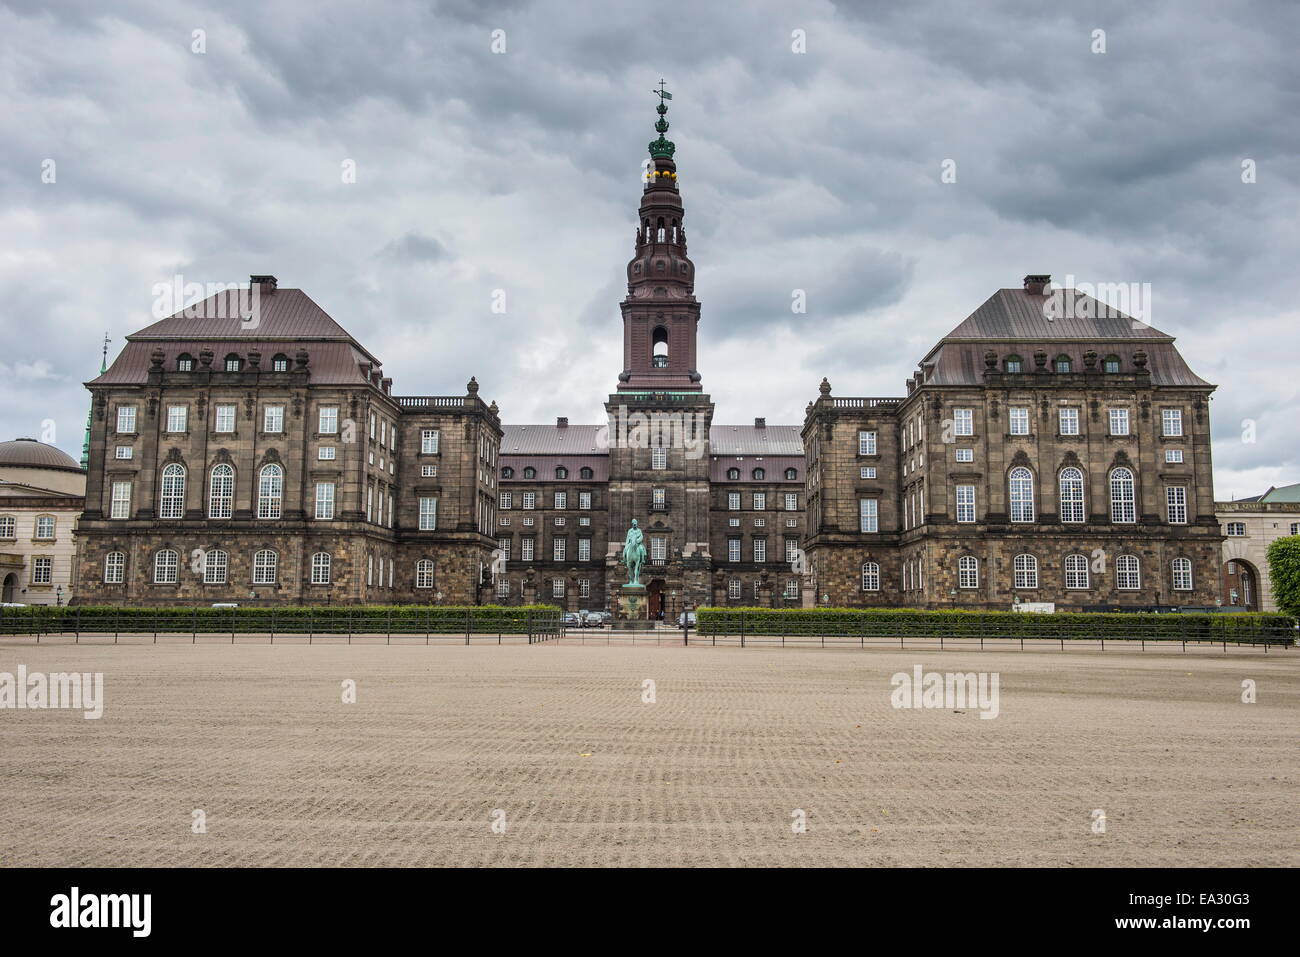 Castello di Christiansborg sede del parlamento danese di Copenaghen, Danimarca, Scandinavia, Europa Foto Stock